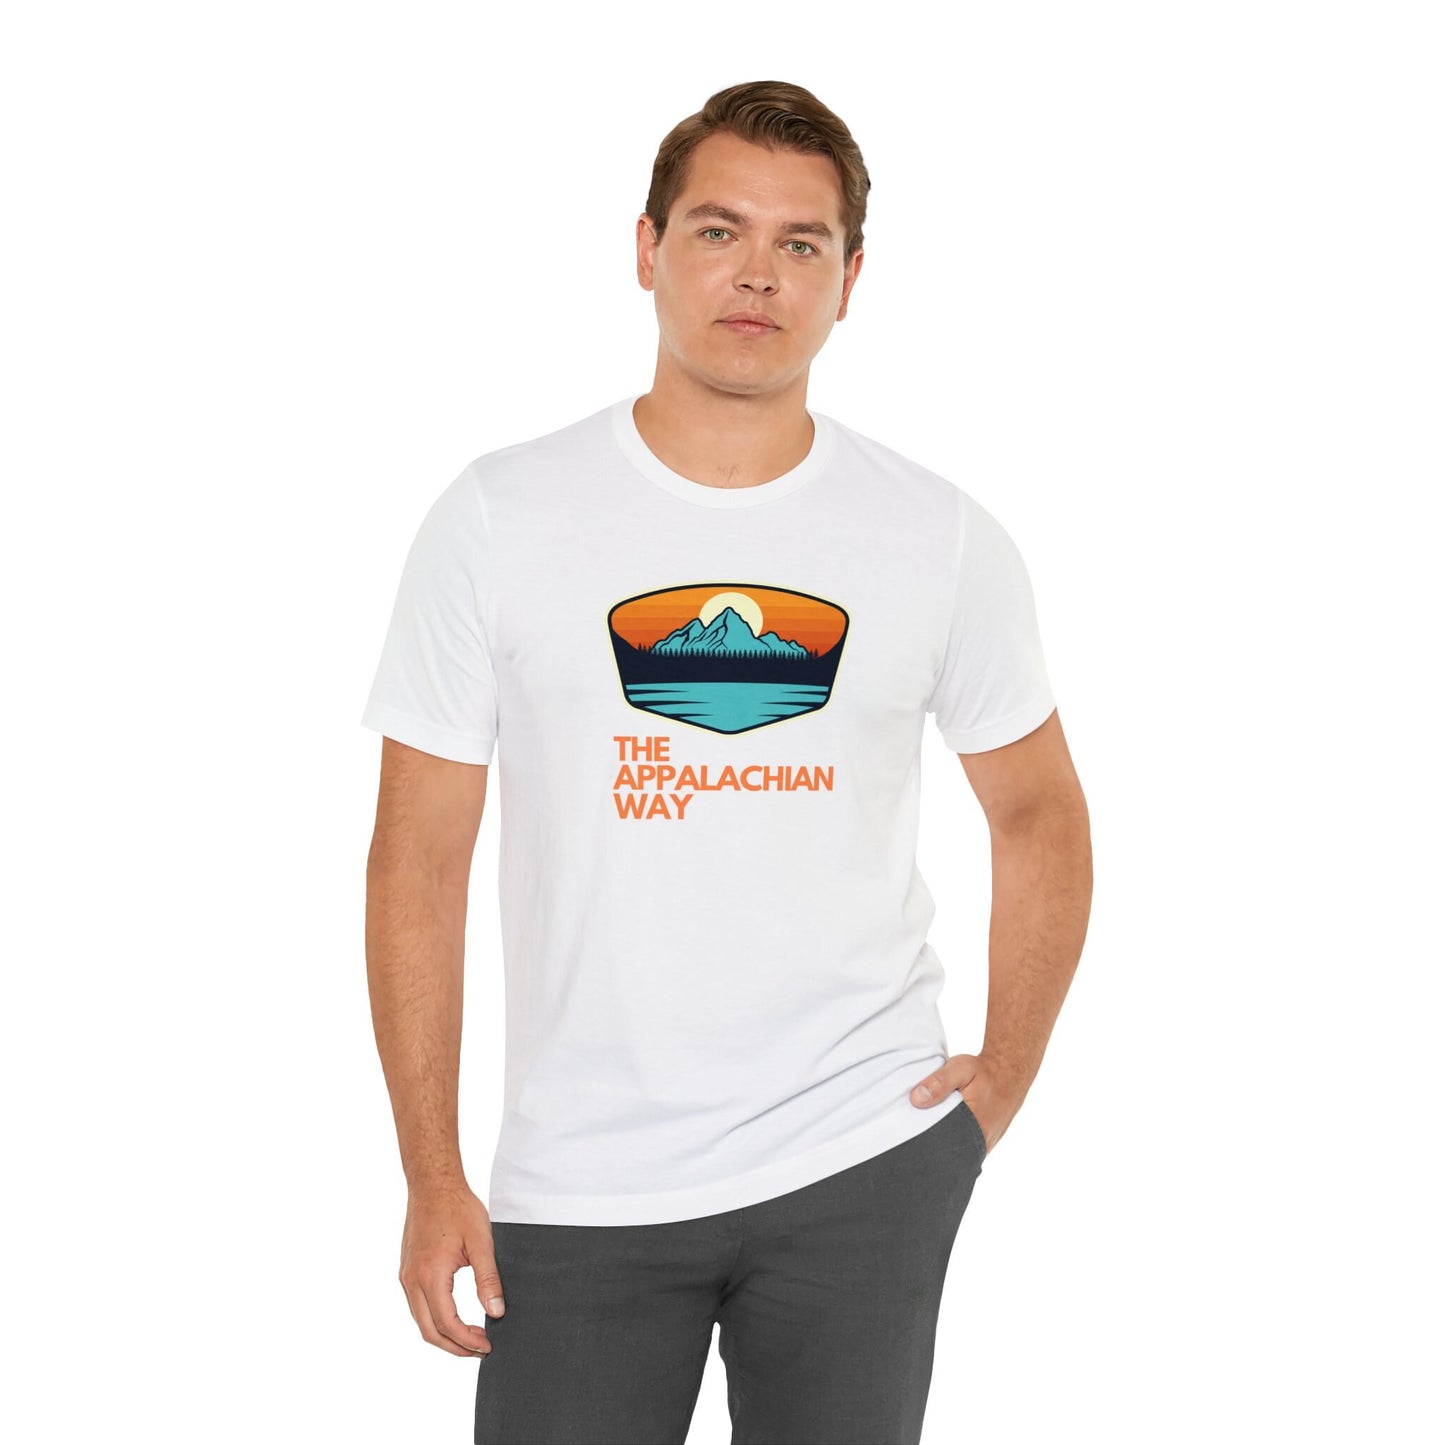 The Appalachian Way Lake Sunset Graphic T-shirt